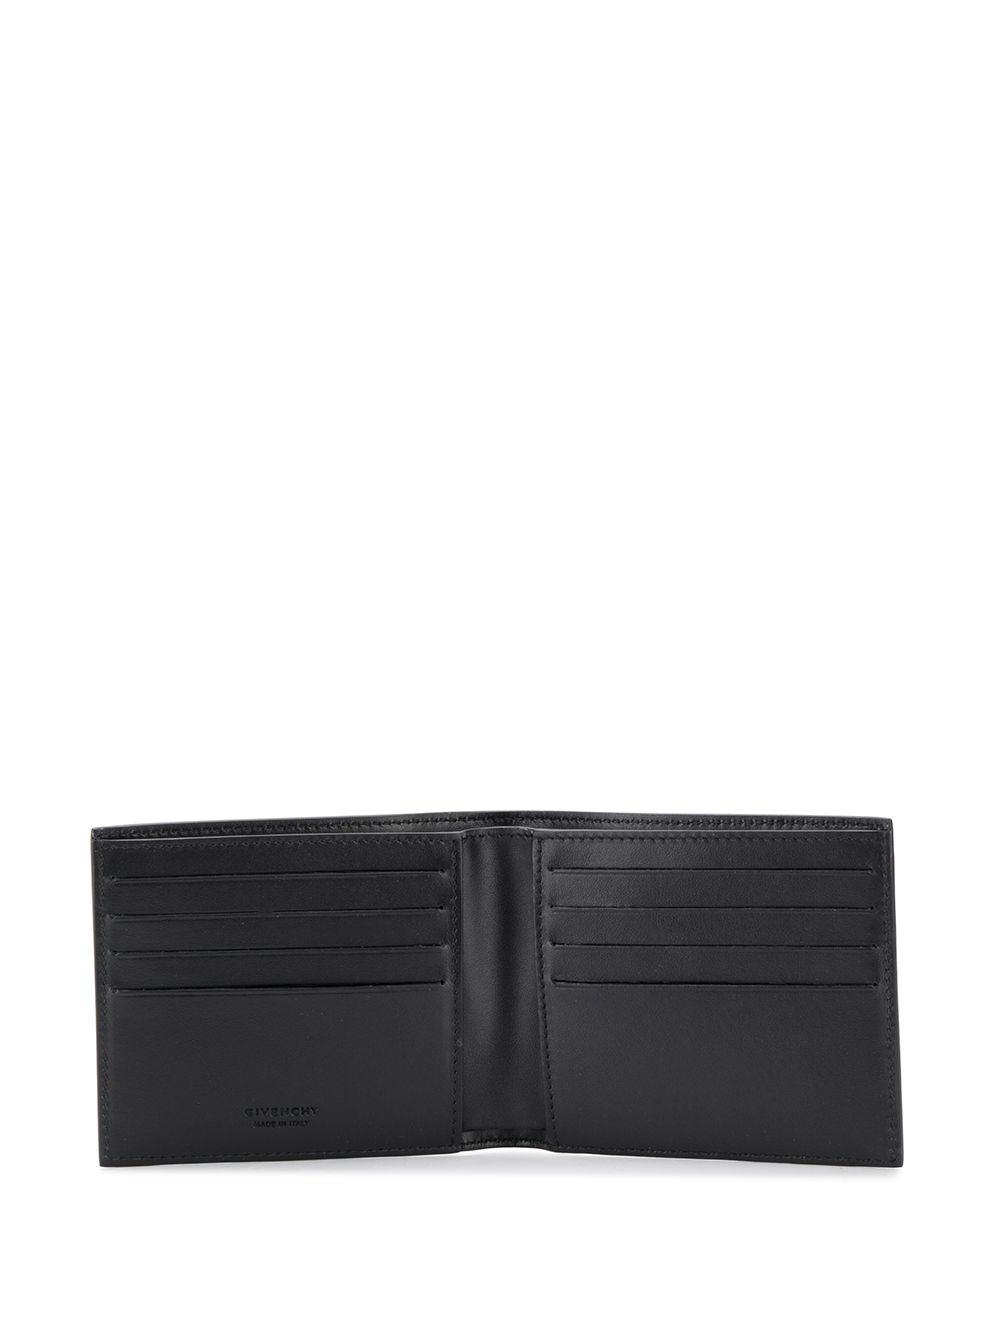 фото Givenchy кошелек с логотипом